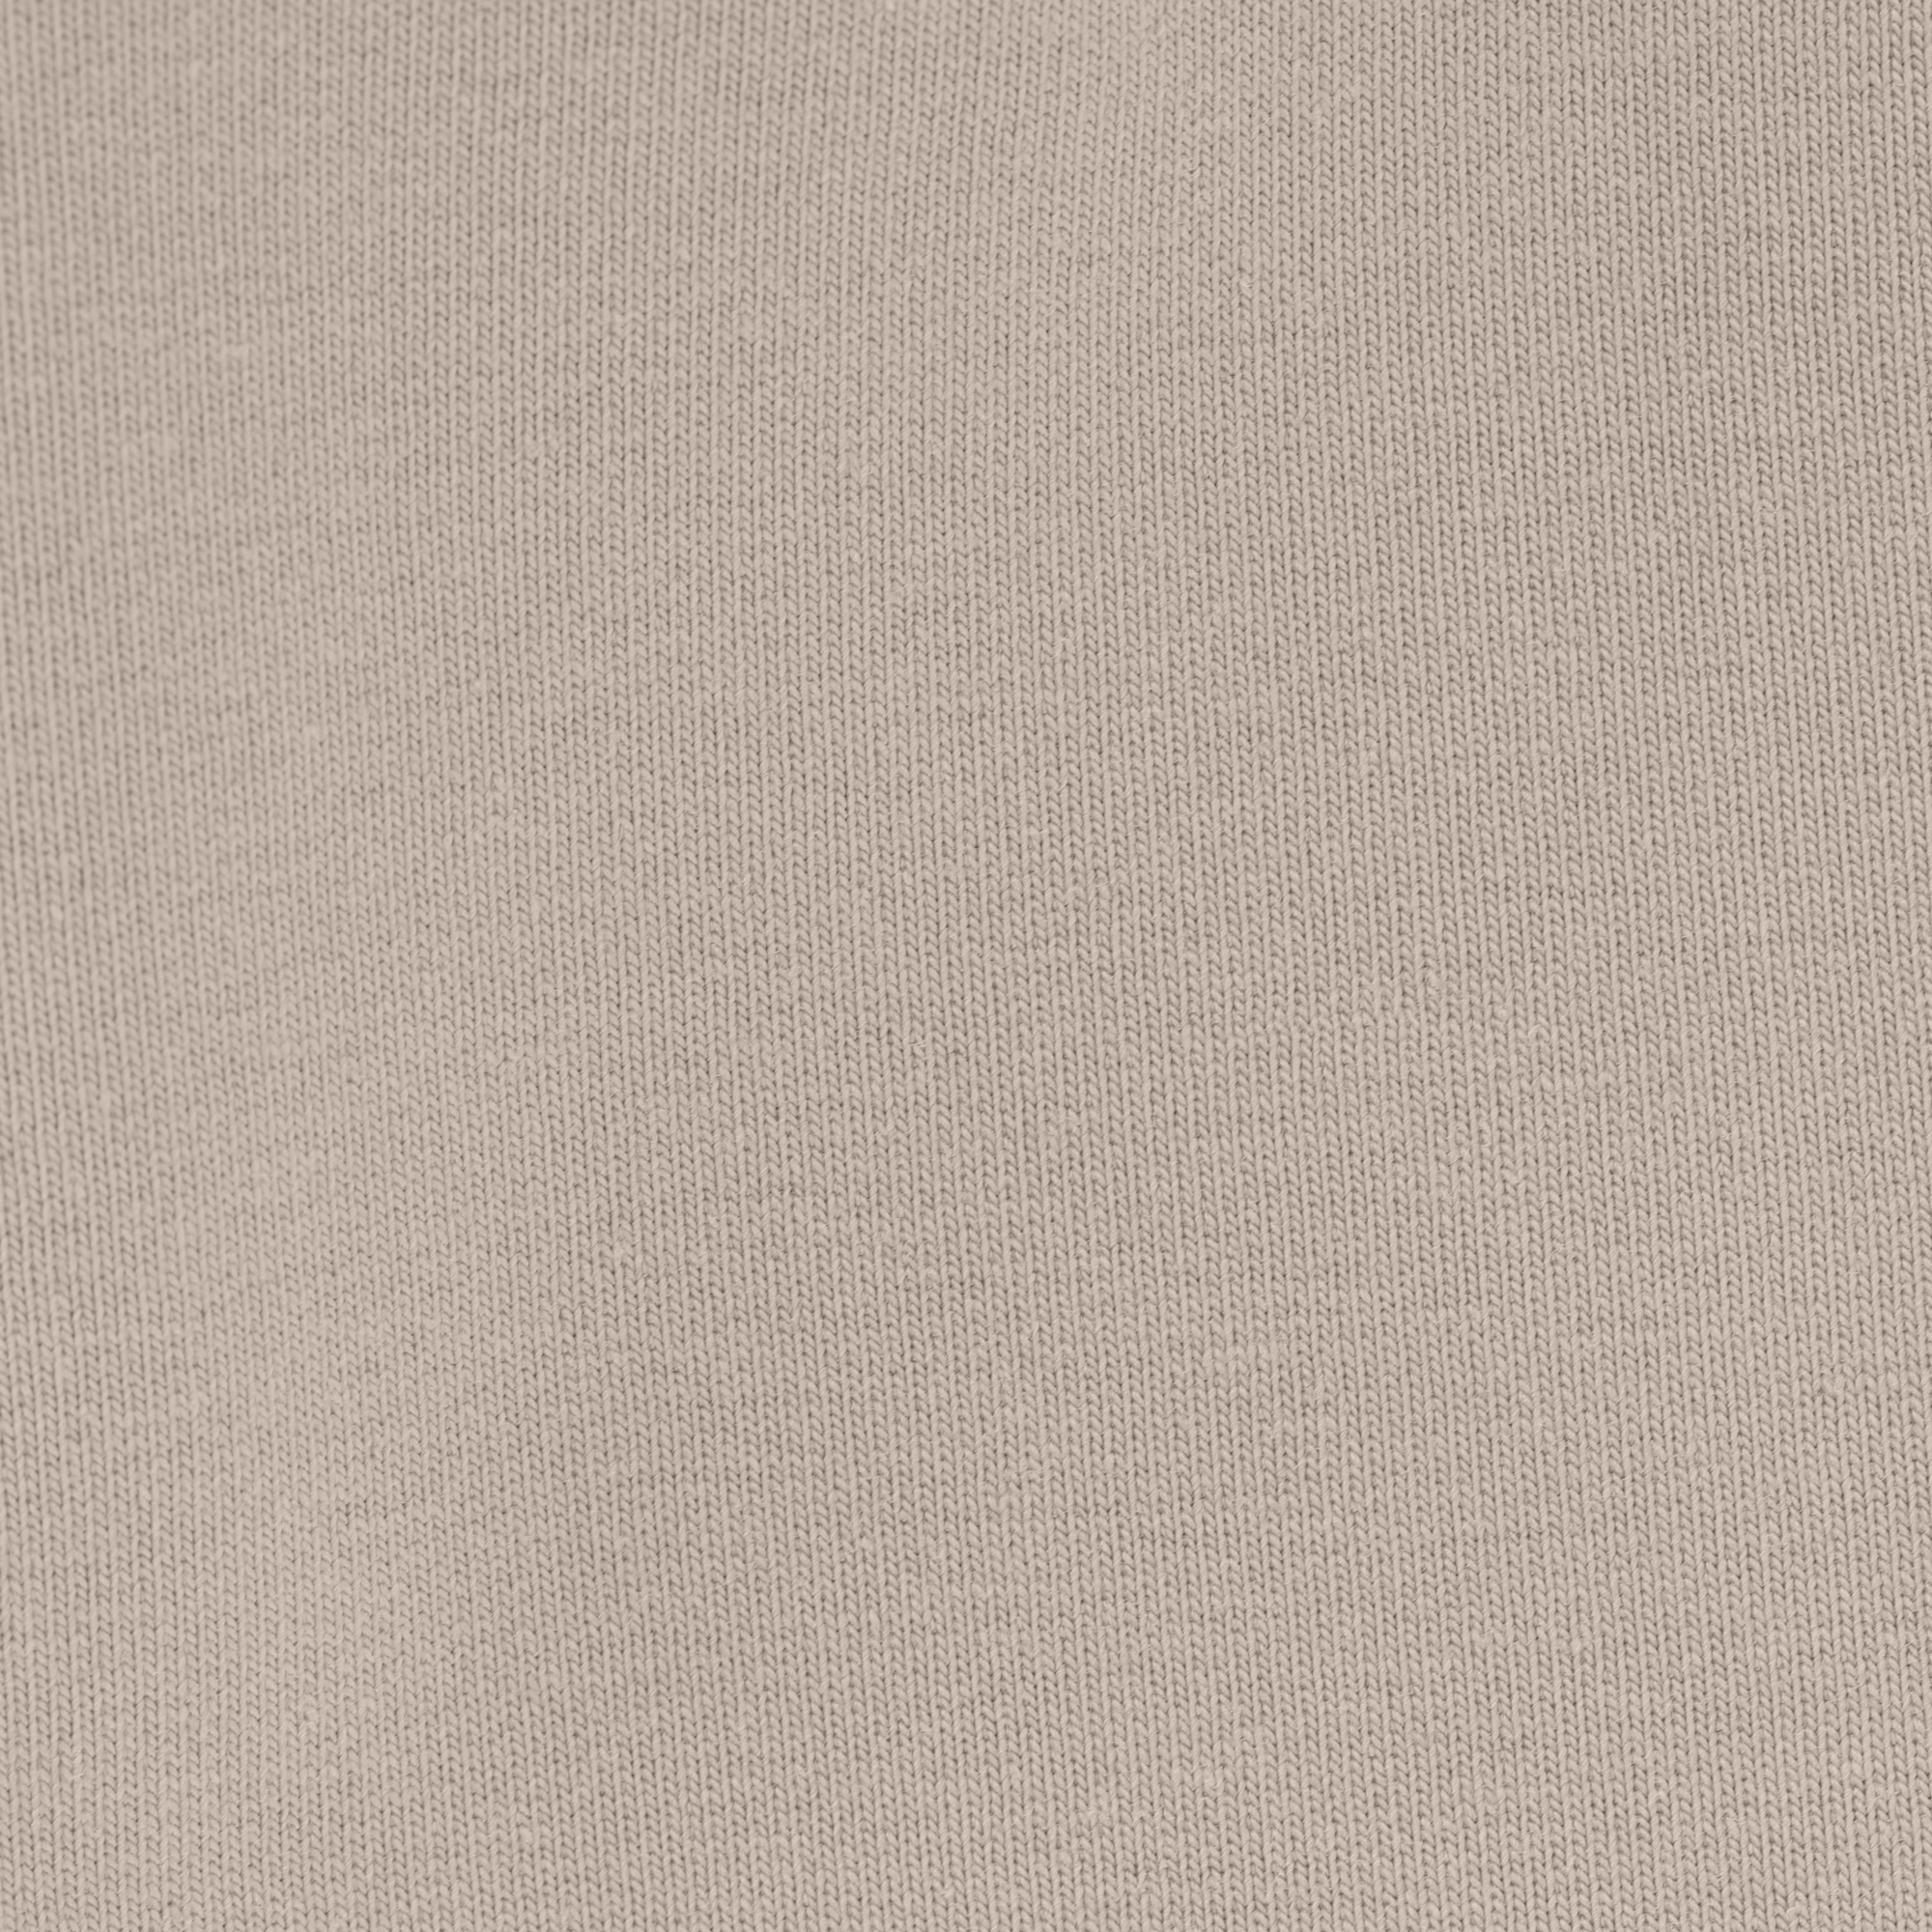 Женская толстовка Birlik светло-бежевая с капюшоном, цвет светло-бежевый, размер M - фото 2